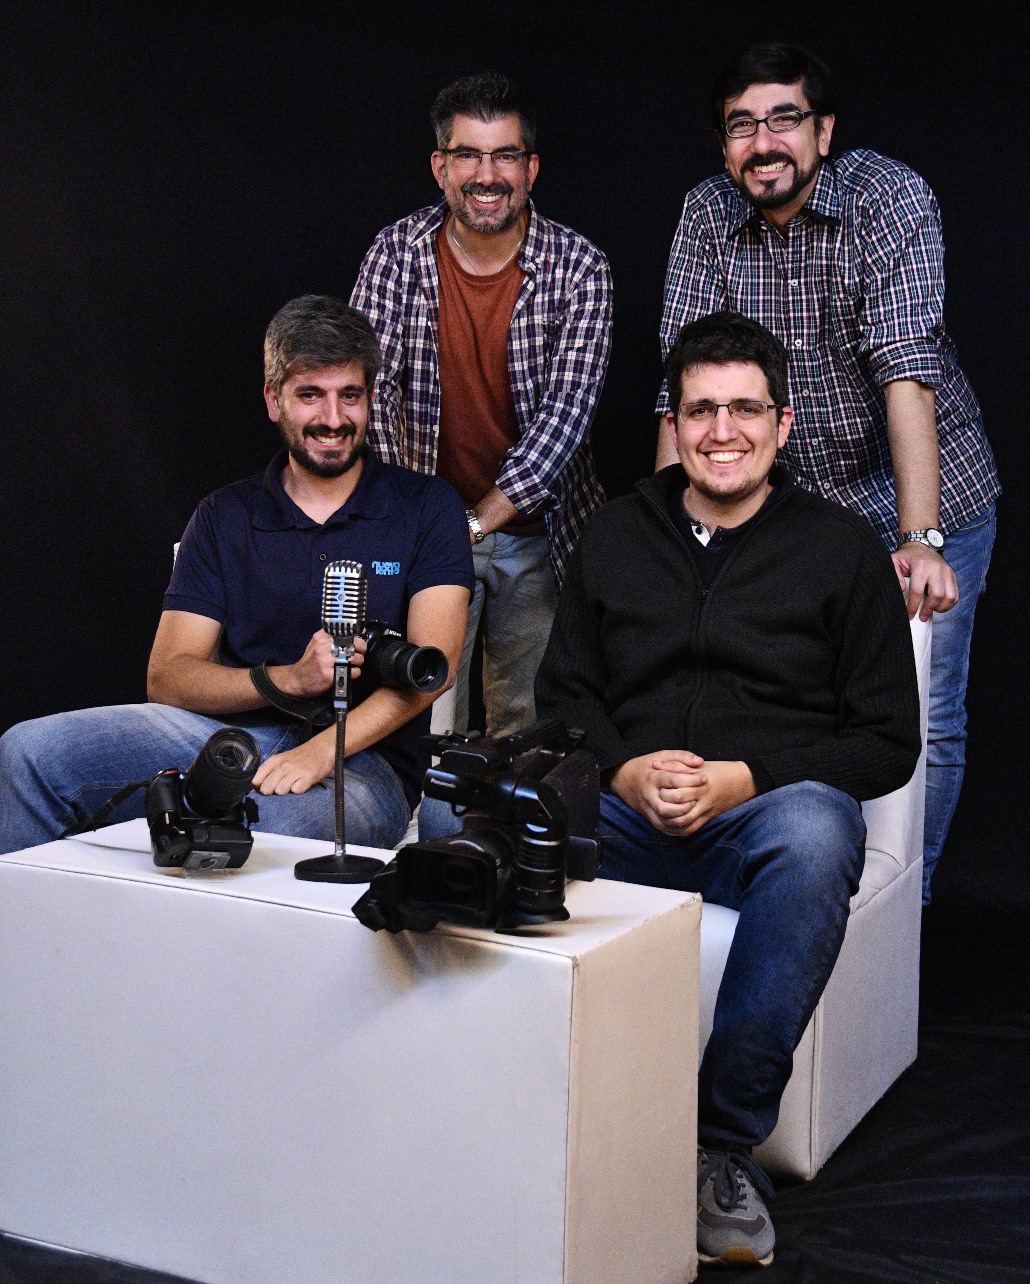 De pie- Rodrigo Betarte y Diego Maga.Sentados- Mariano Betarte y Román Betarte